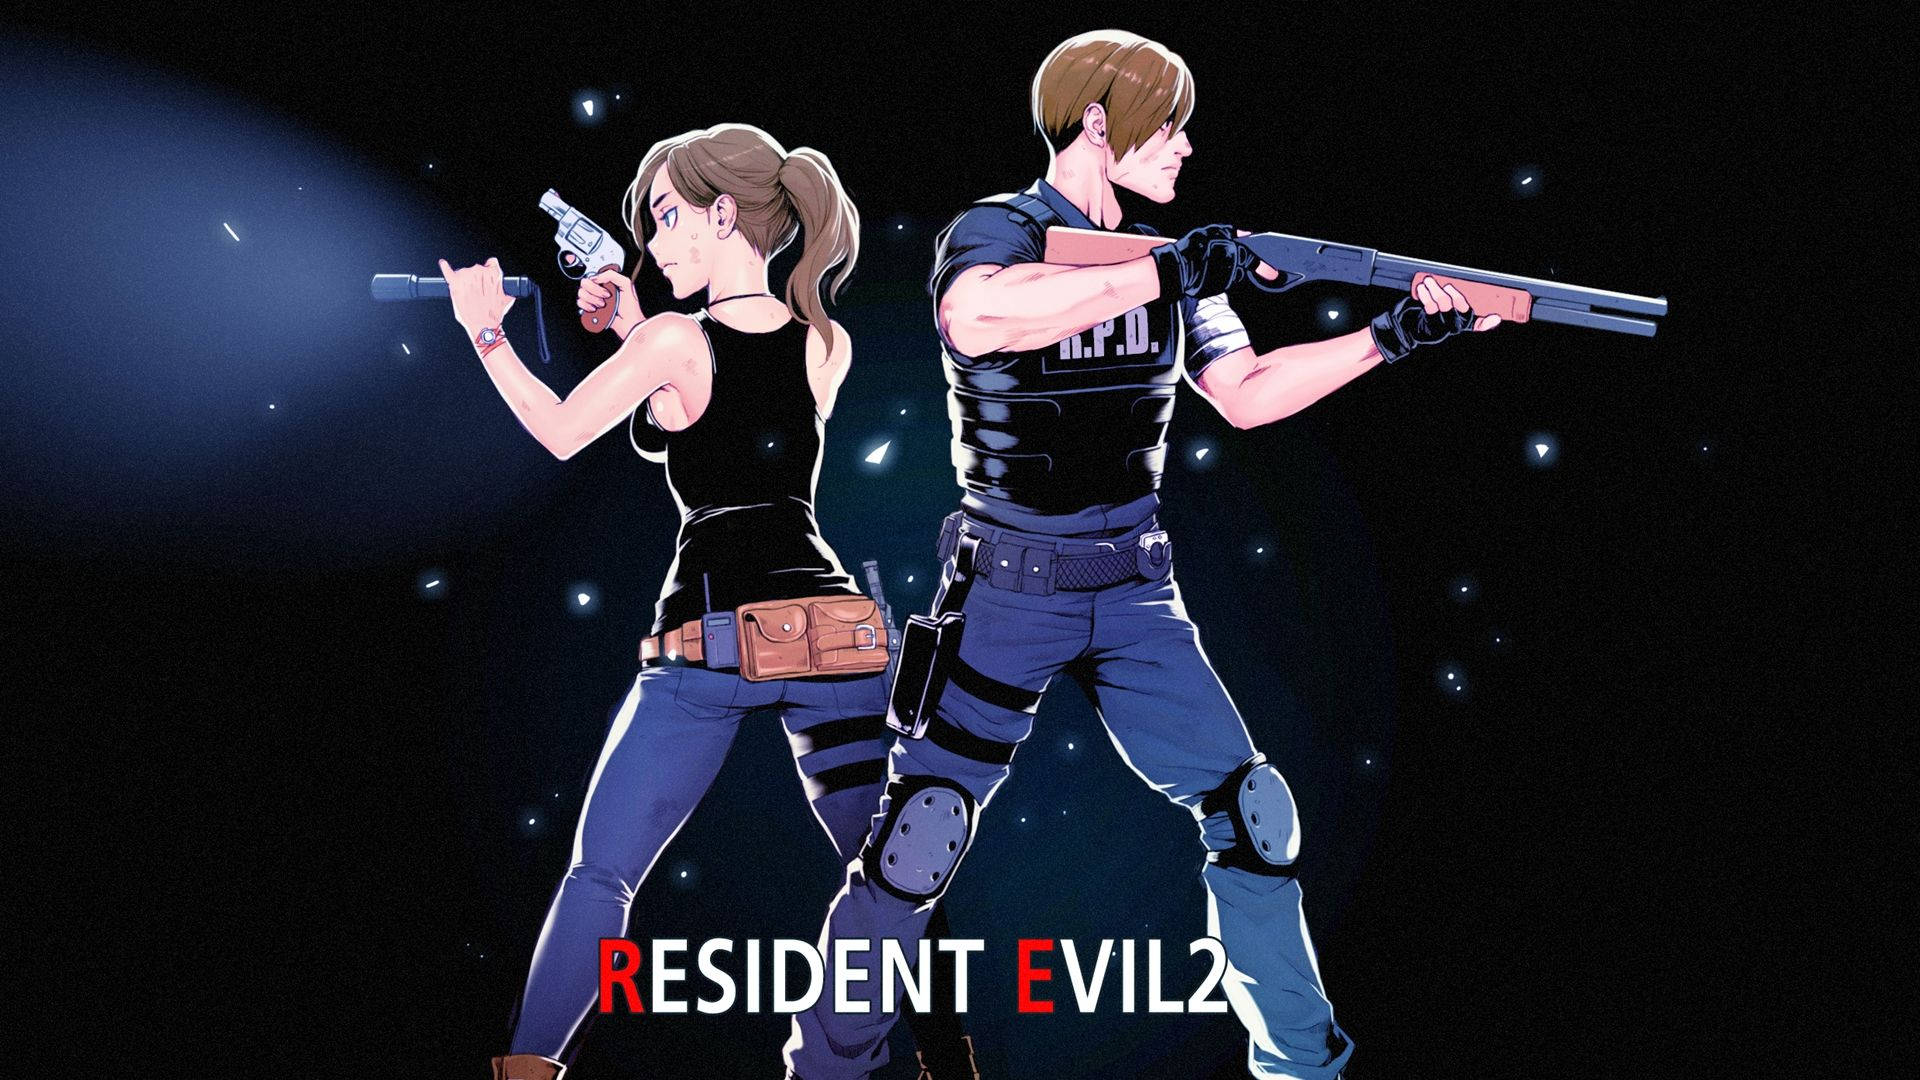 Resident Evil 2 Wallpaper for FREE